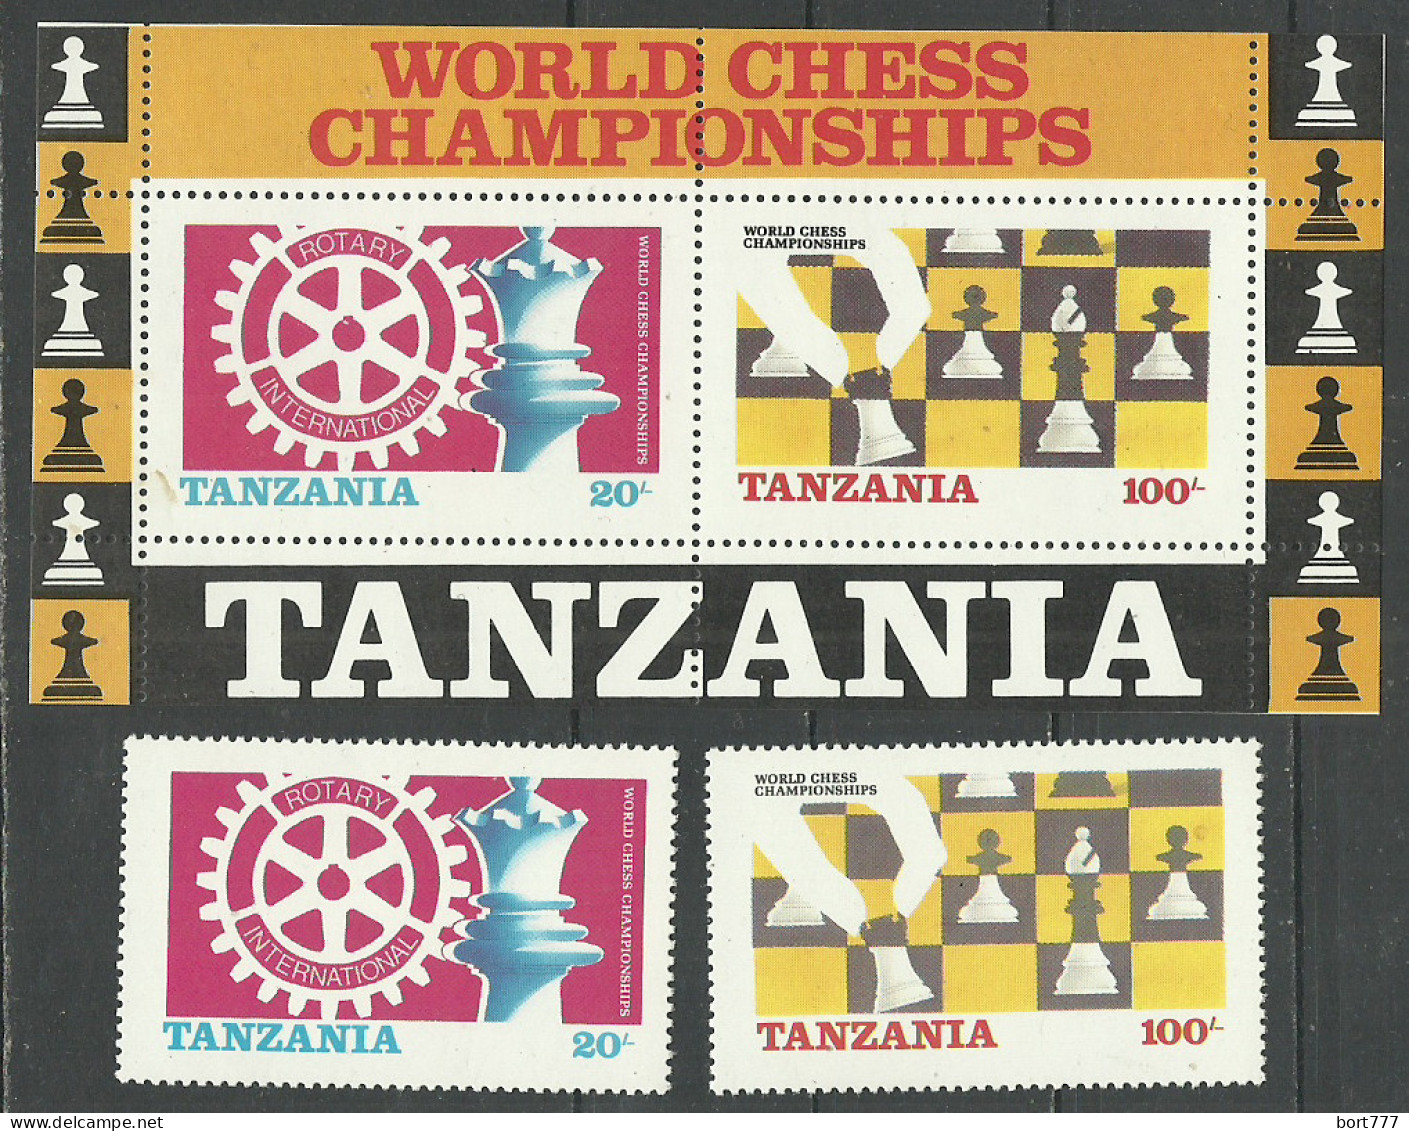 Tanzania 1986 Year, Set + Block Mint Stamps MNH(**) Chess - Tanzania (1964-...)